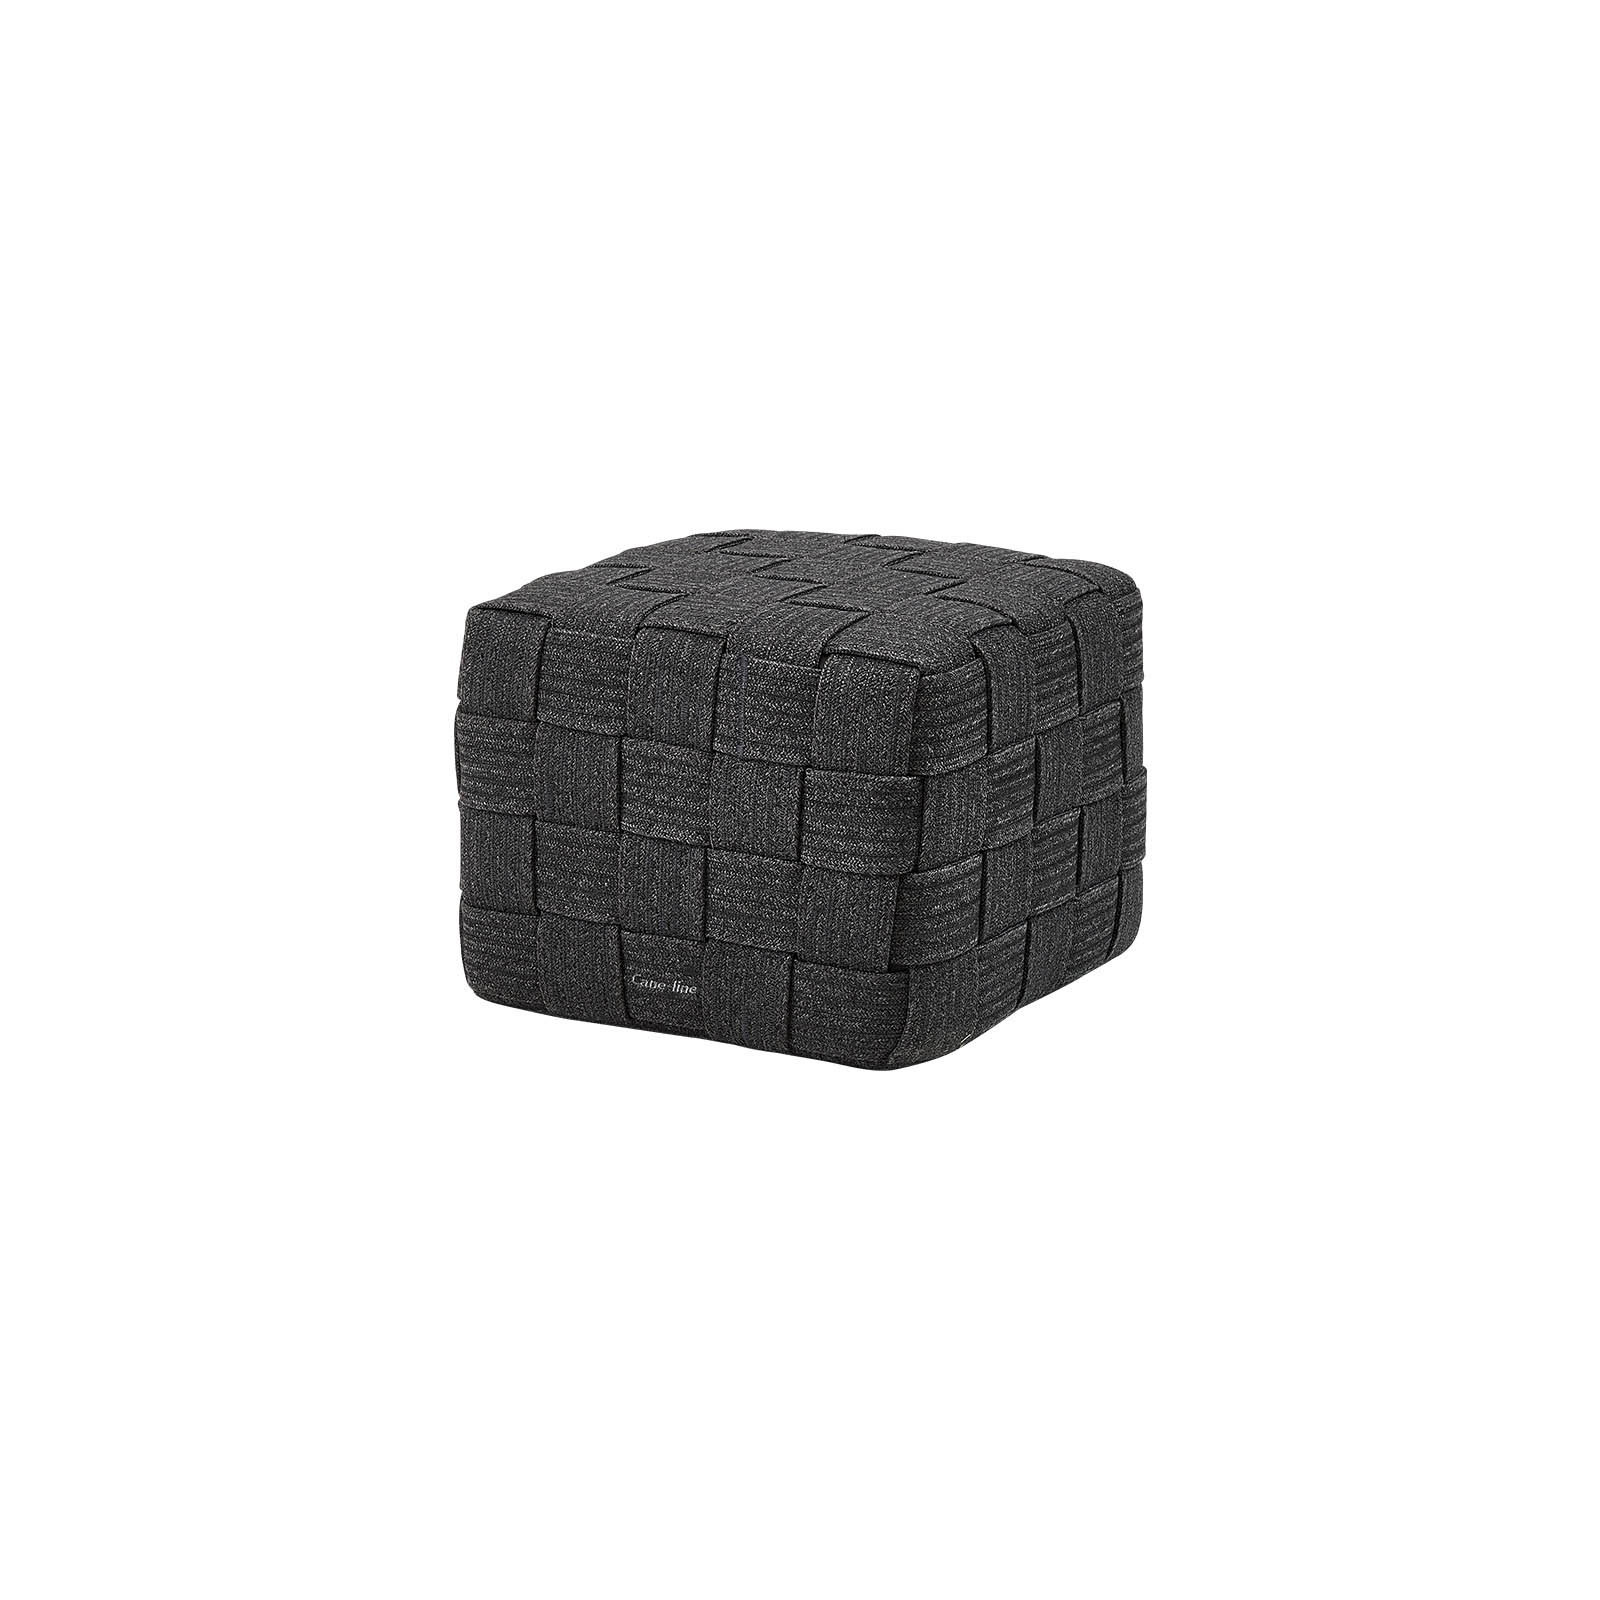 Cube Hocker aus Cane-line Soft Rope in Dark Grey